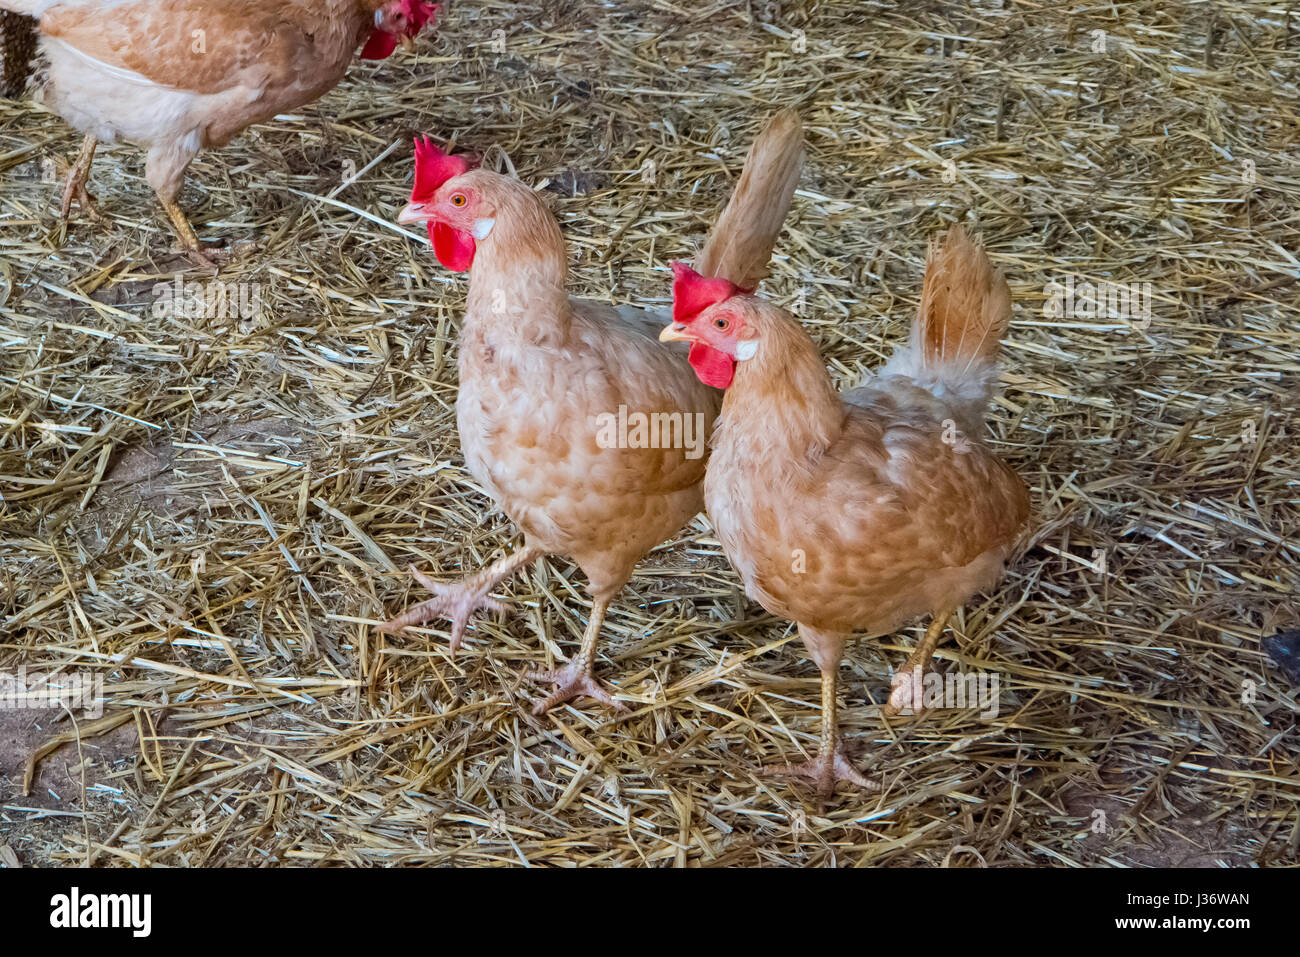 Hens outdoors farm. Stock Photo